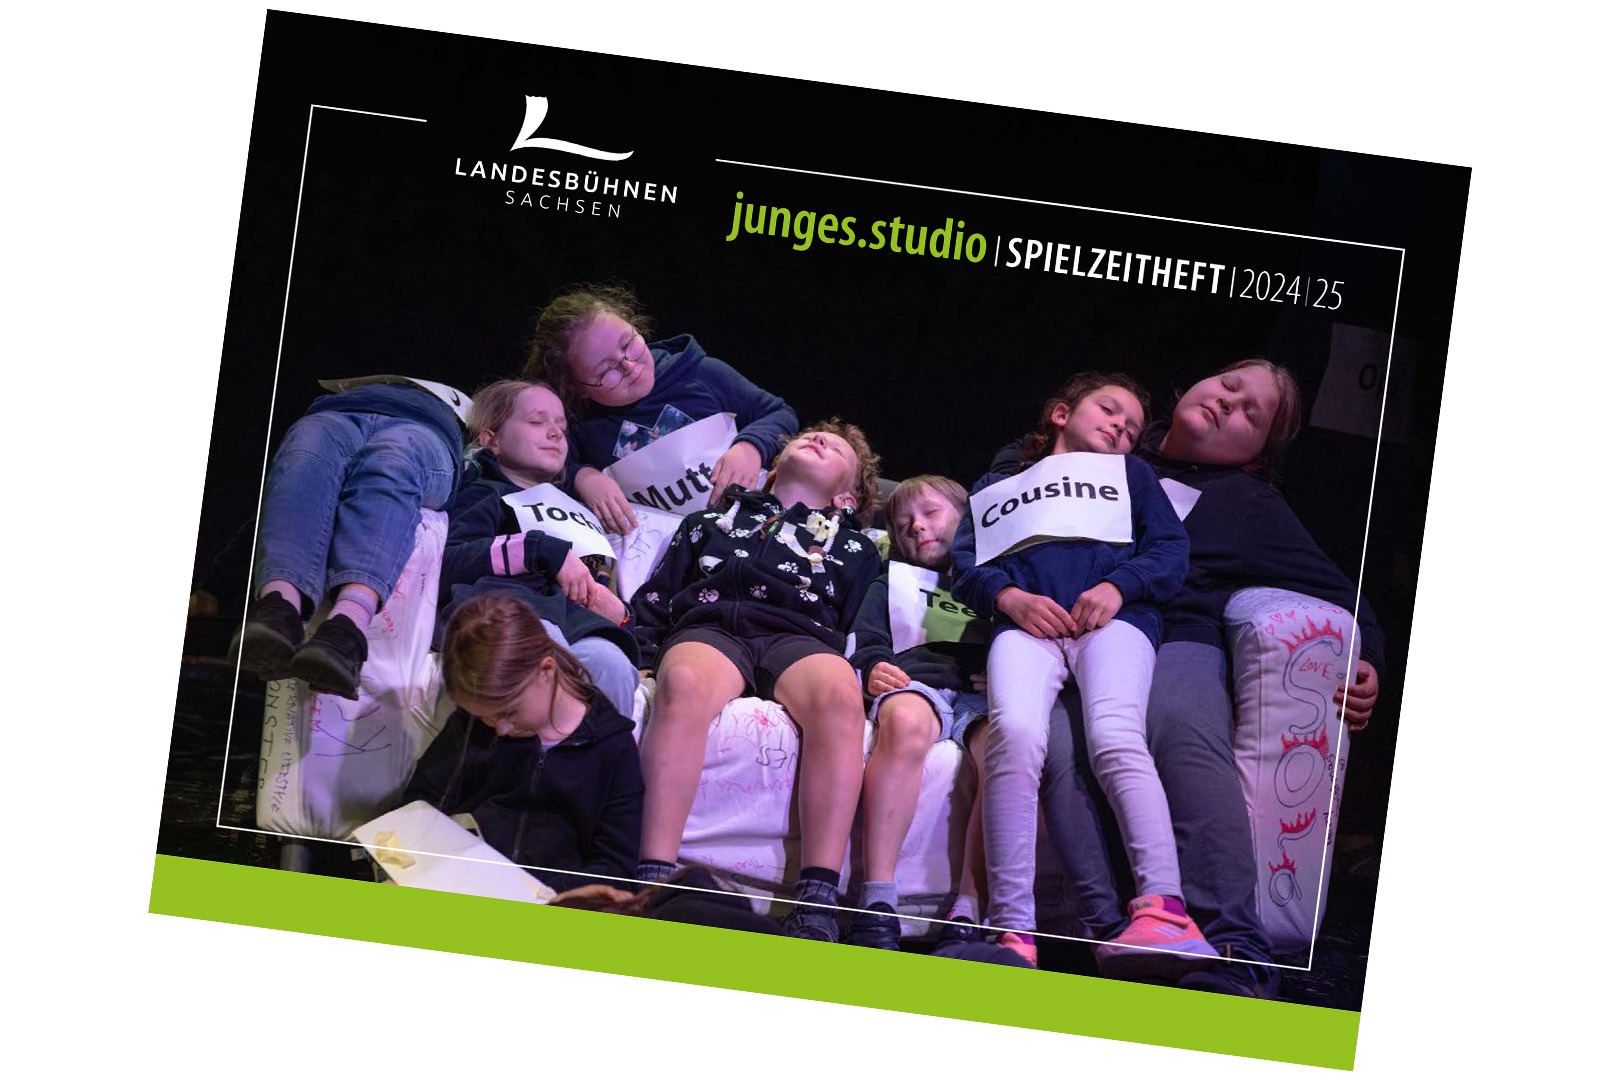 Landesbühnen Sachsen - Junges Studio Spielzeitheft